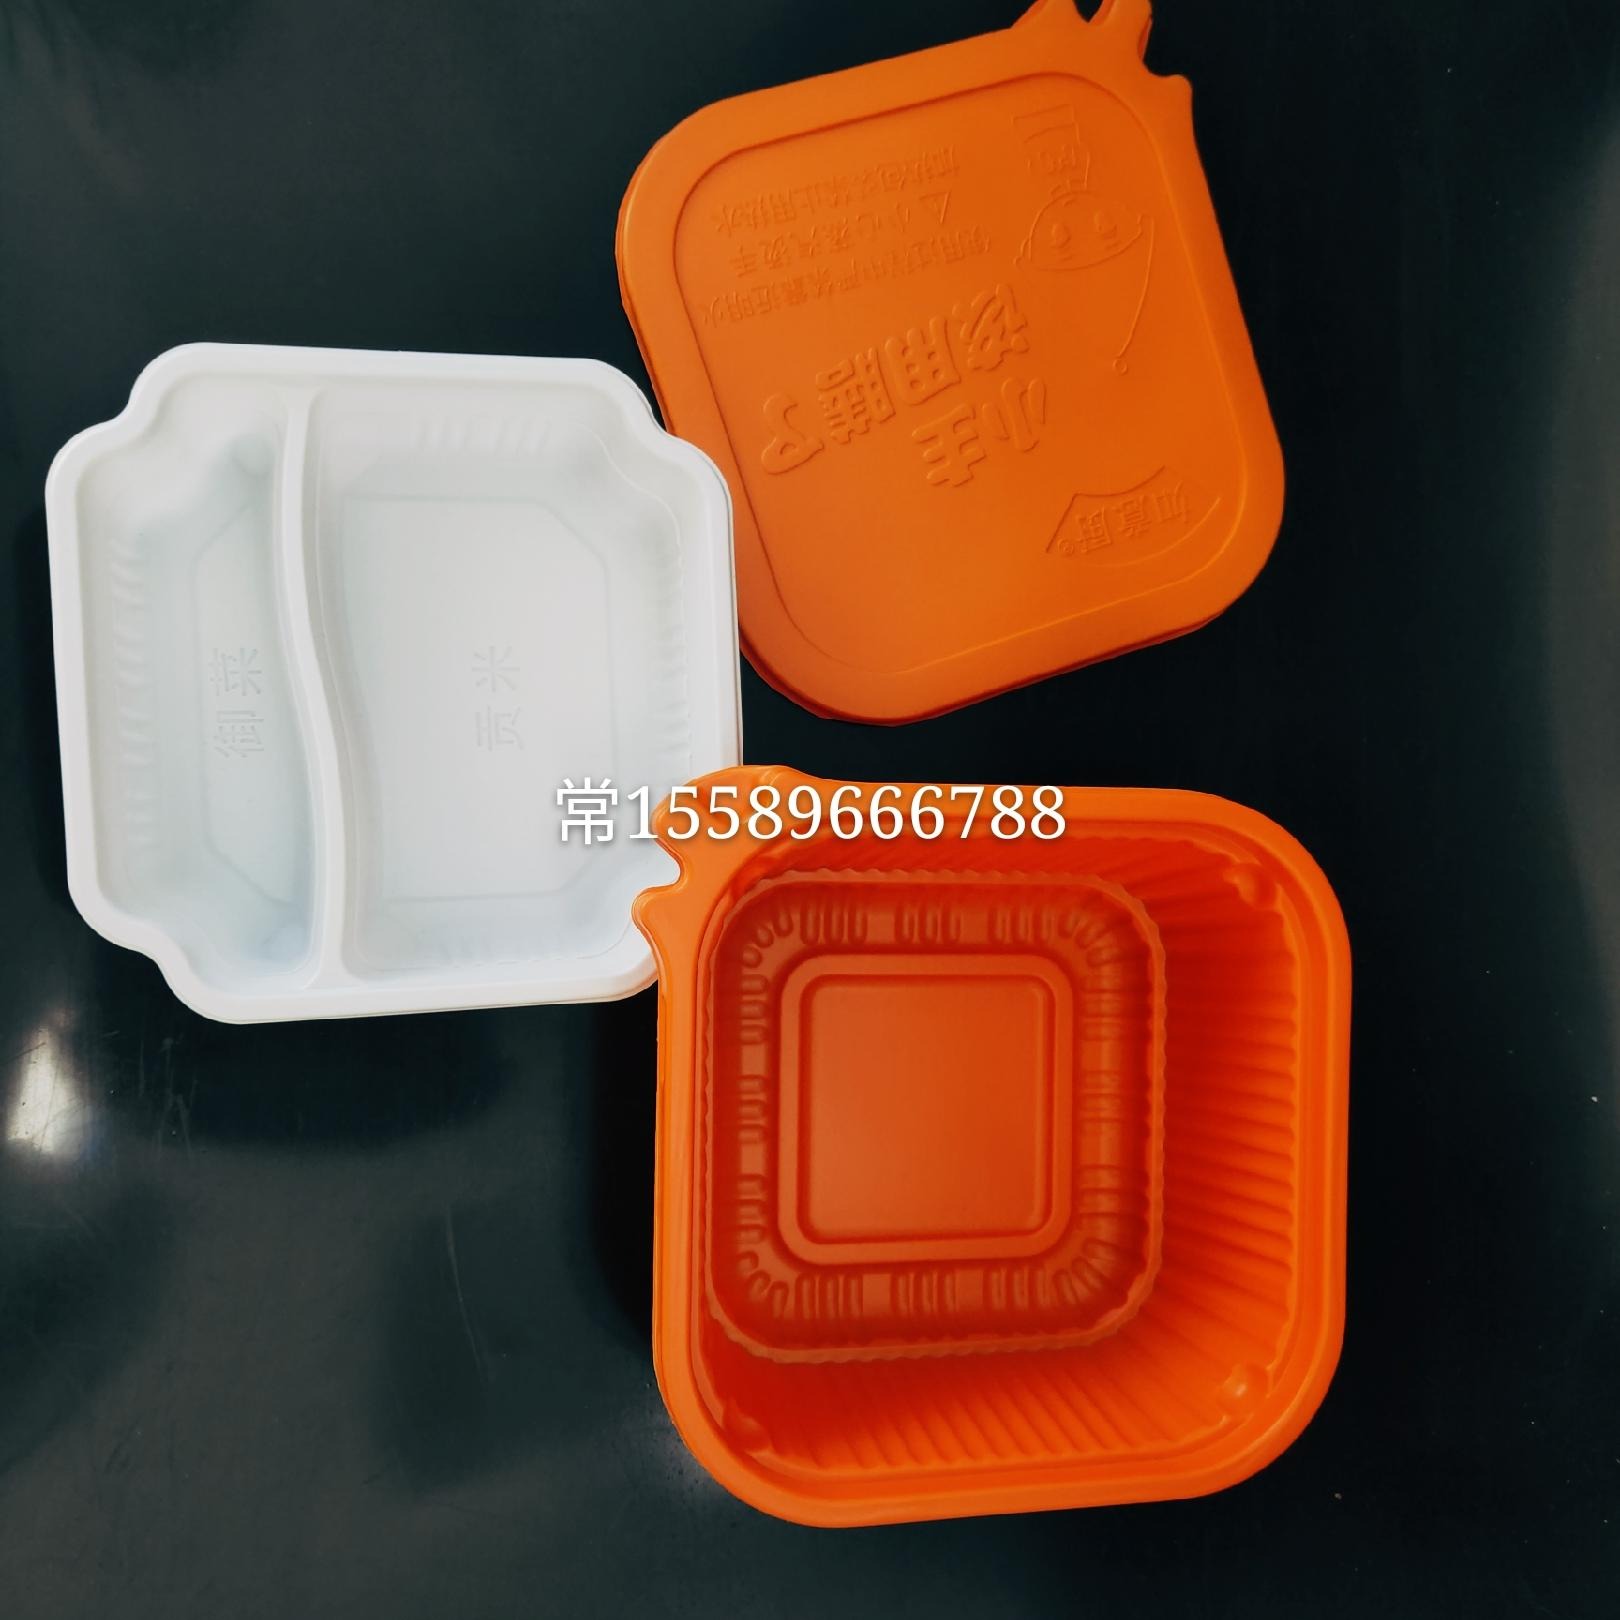 厂家直供自加热火锅塑料碗  方便菜自加热锅  可耐高温  PP材质WR00047